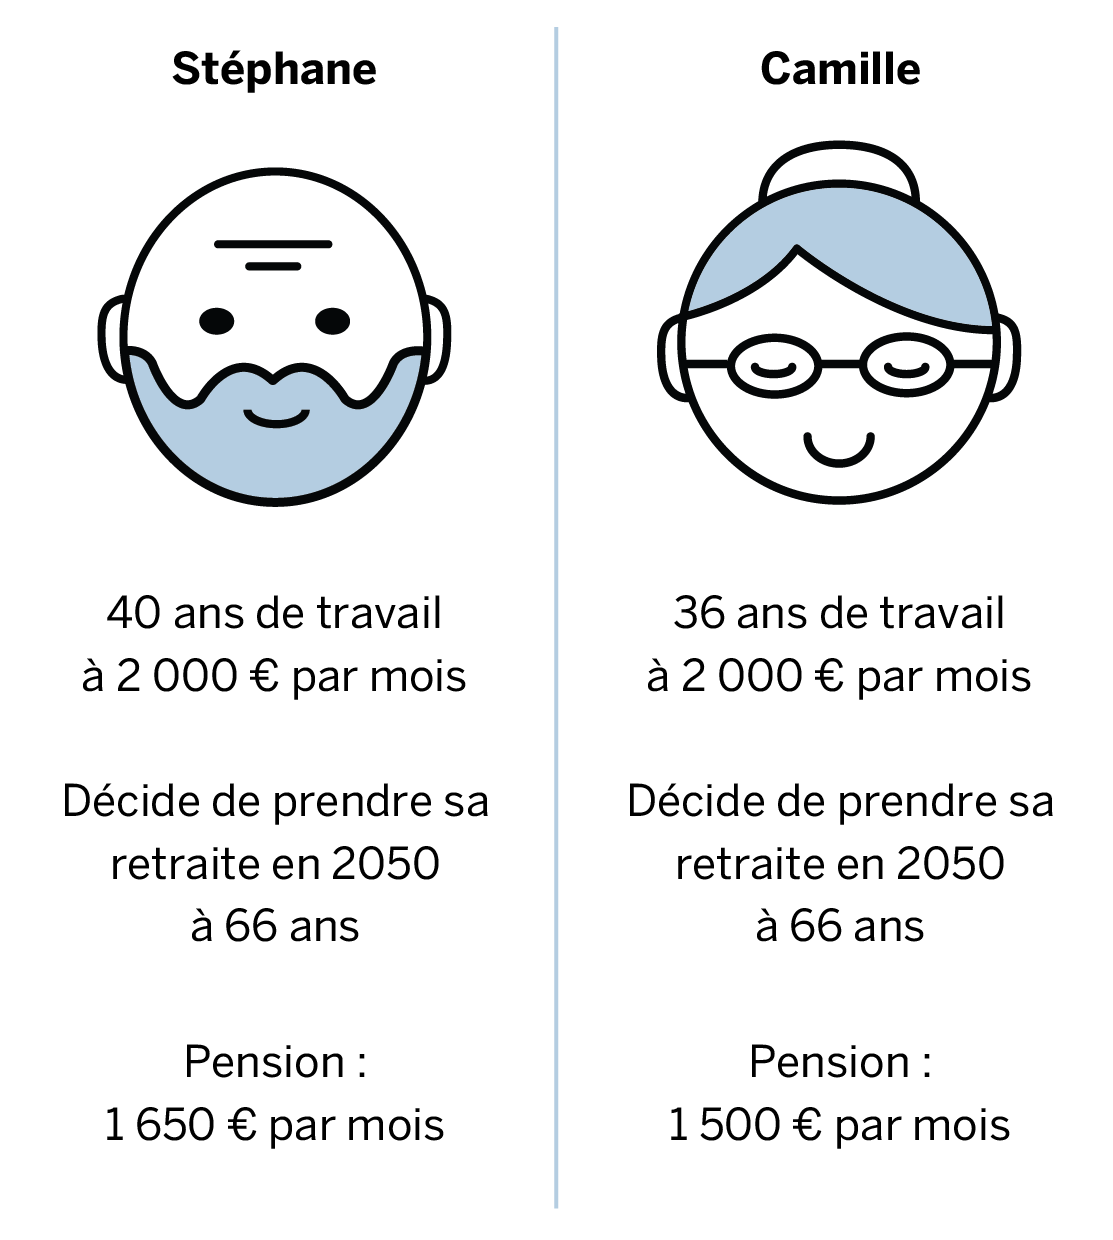 Exemple : Stéphane a travaillé 40 ans à 2 000 € par mois. Il décide de prendre sa retraite en 2050 à 66 ans, et touchera une pension de 1 650 € par mois. Camille a travaillé pendant 36 ans à 2 000 € par mois : elle touchera une pension de 1 500 € par mois.